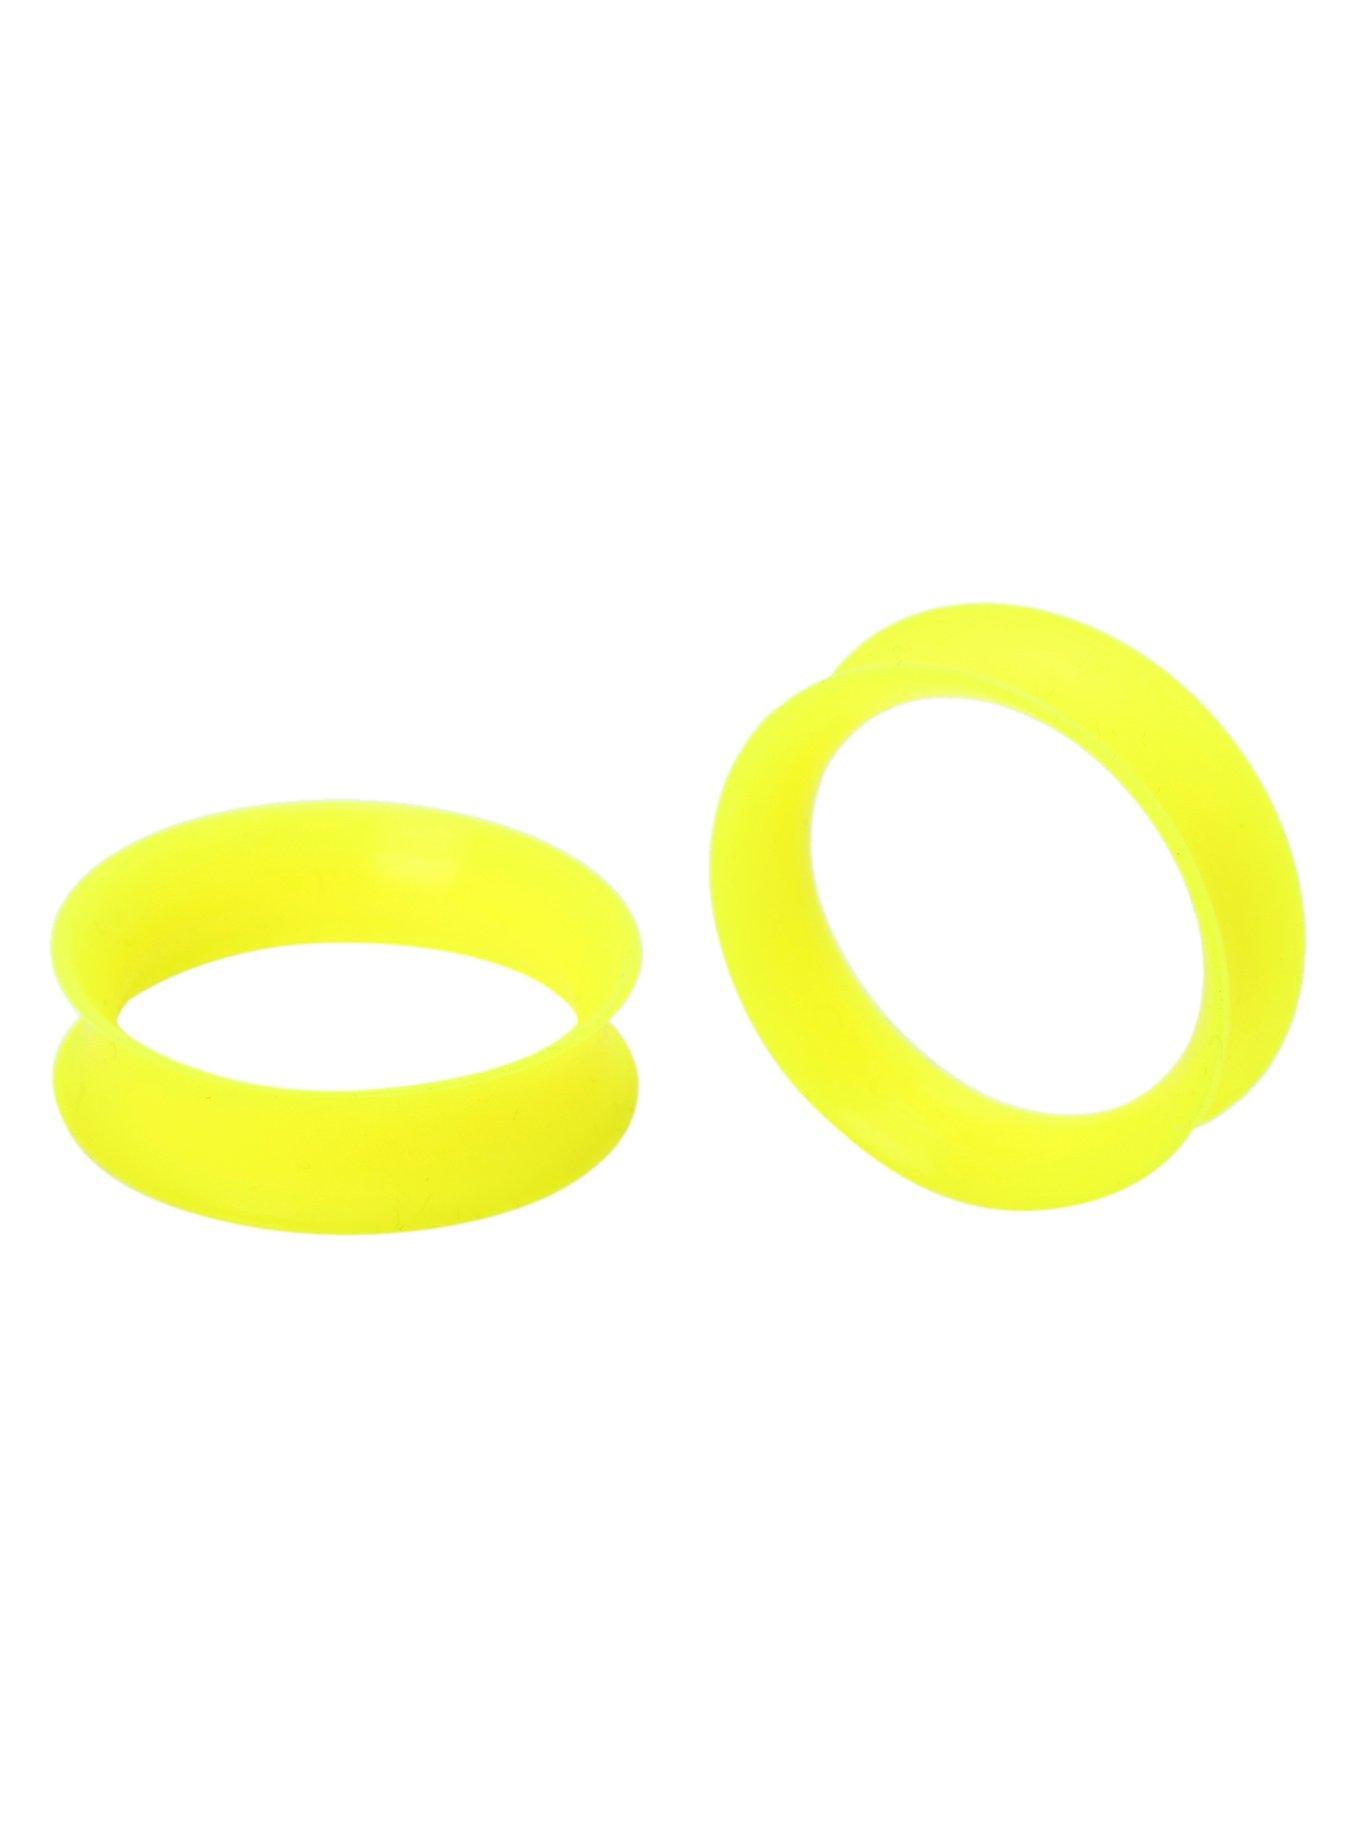 Kaos Softwear UV Yellow Earskin Eyelet Plug 2 Pack, YELLOW, hi-res